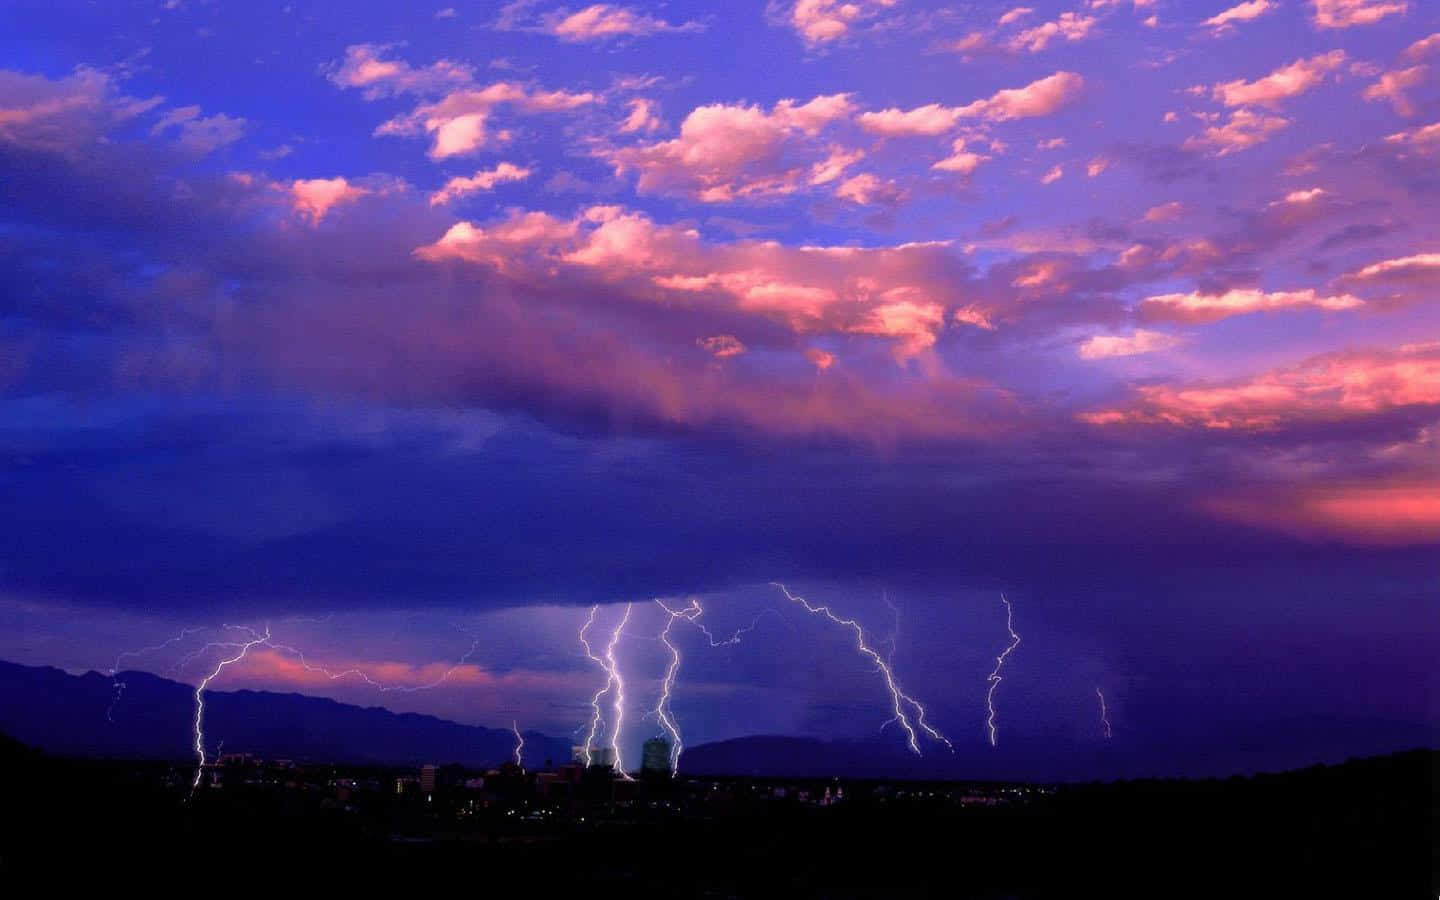 Awe-inspiring Thunderstorm Over A Darkened Landscape